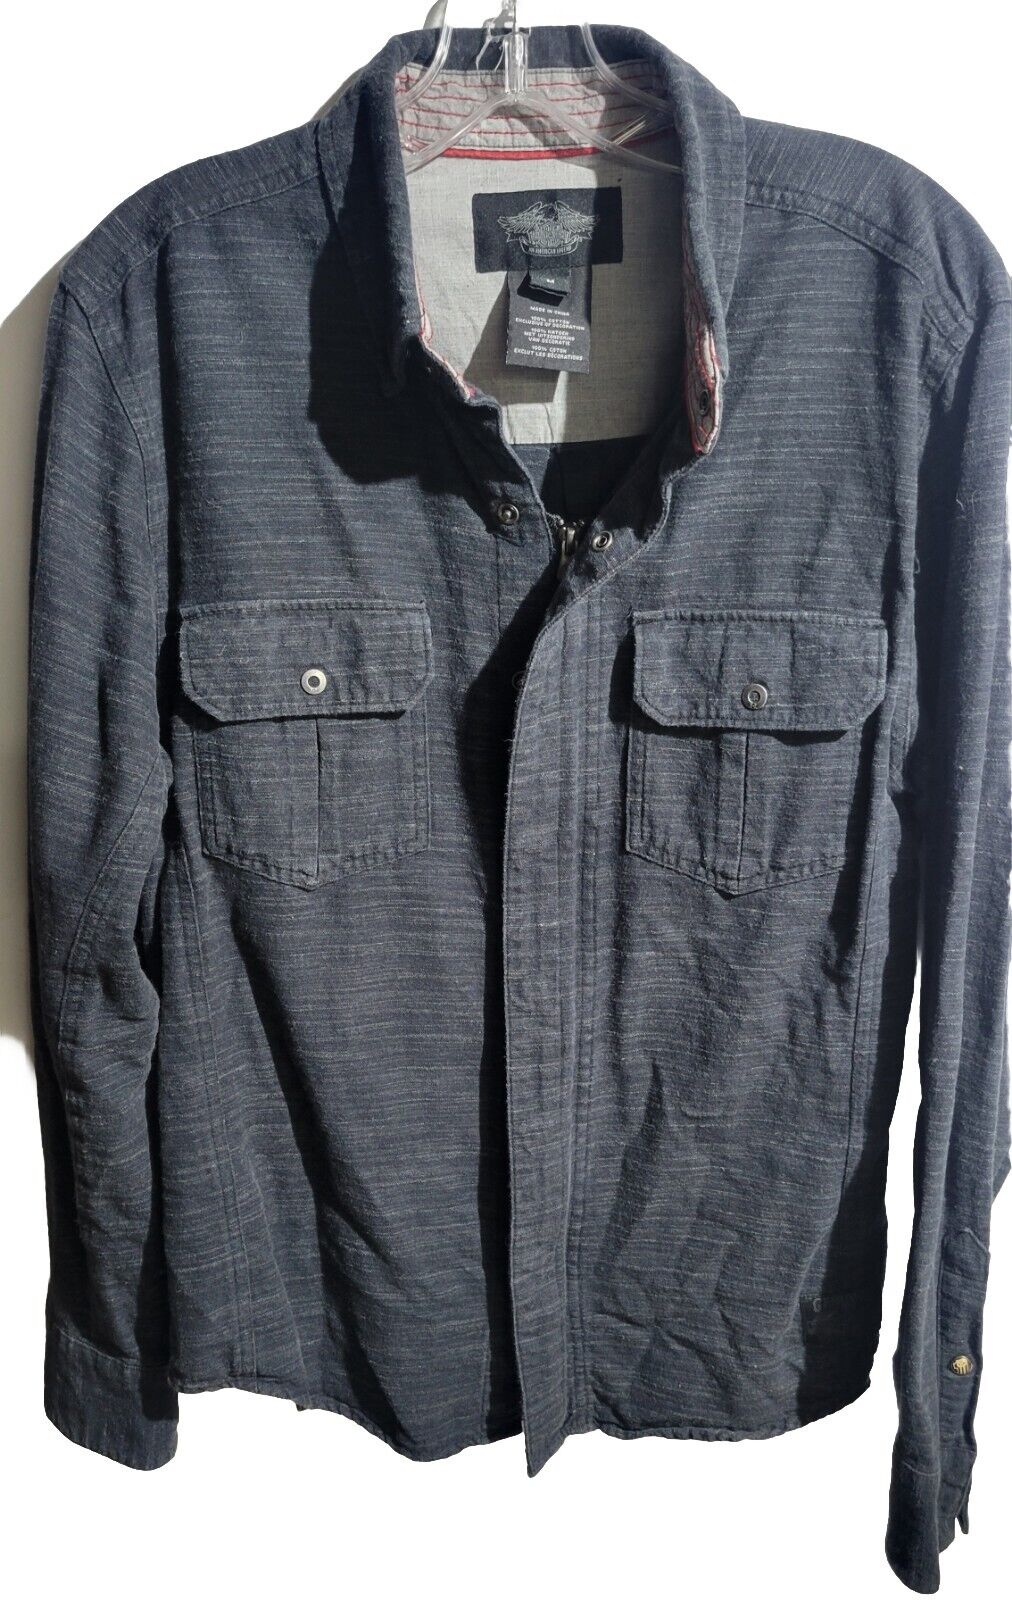 Harley Davidson Shirt/Jacket Punisher Grey Size M